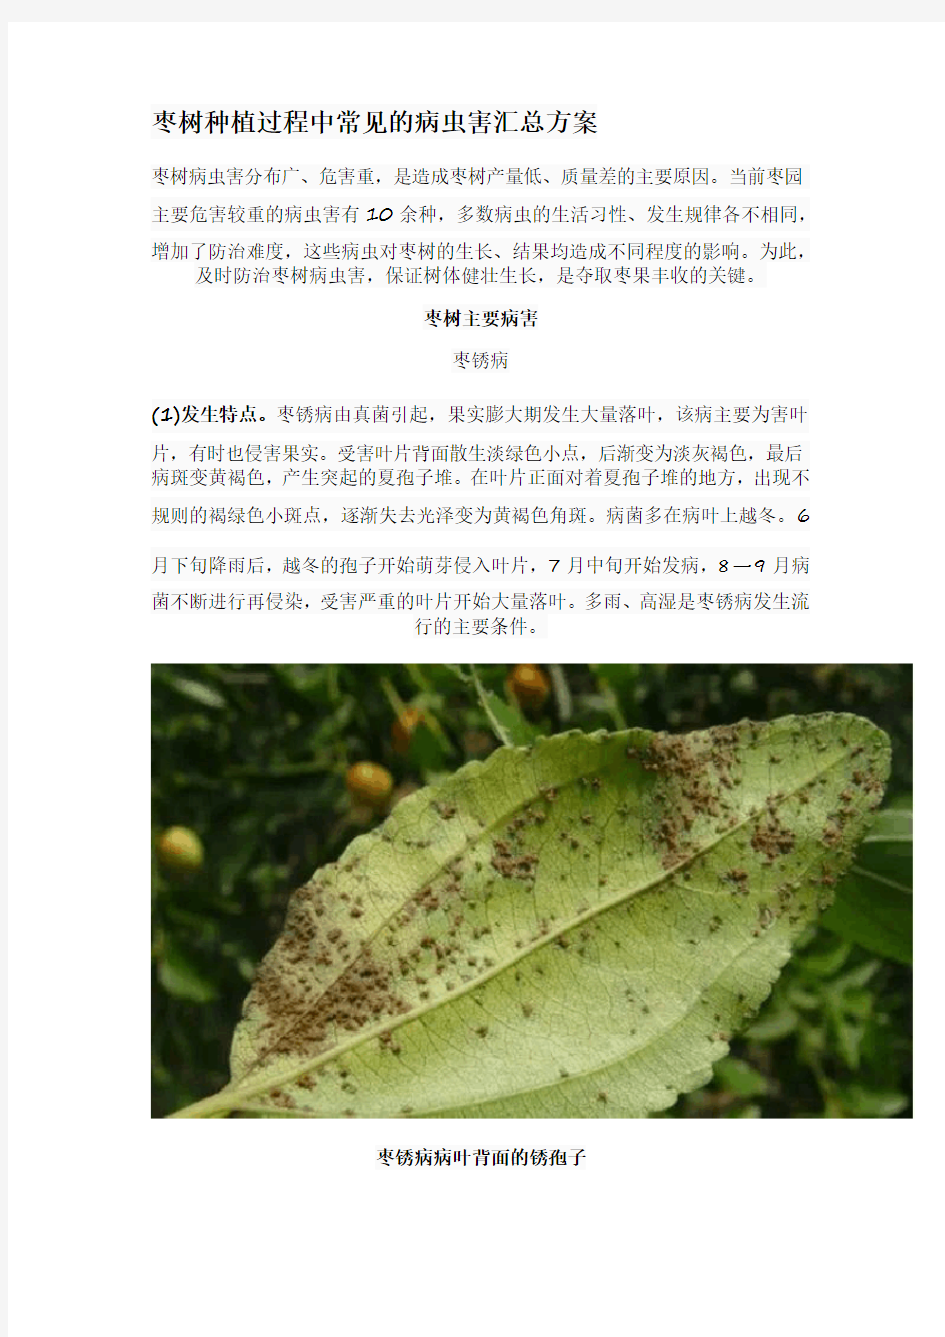 枣树种植过程中常见的病虫害汇总方案